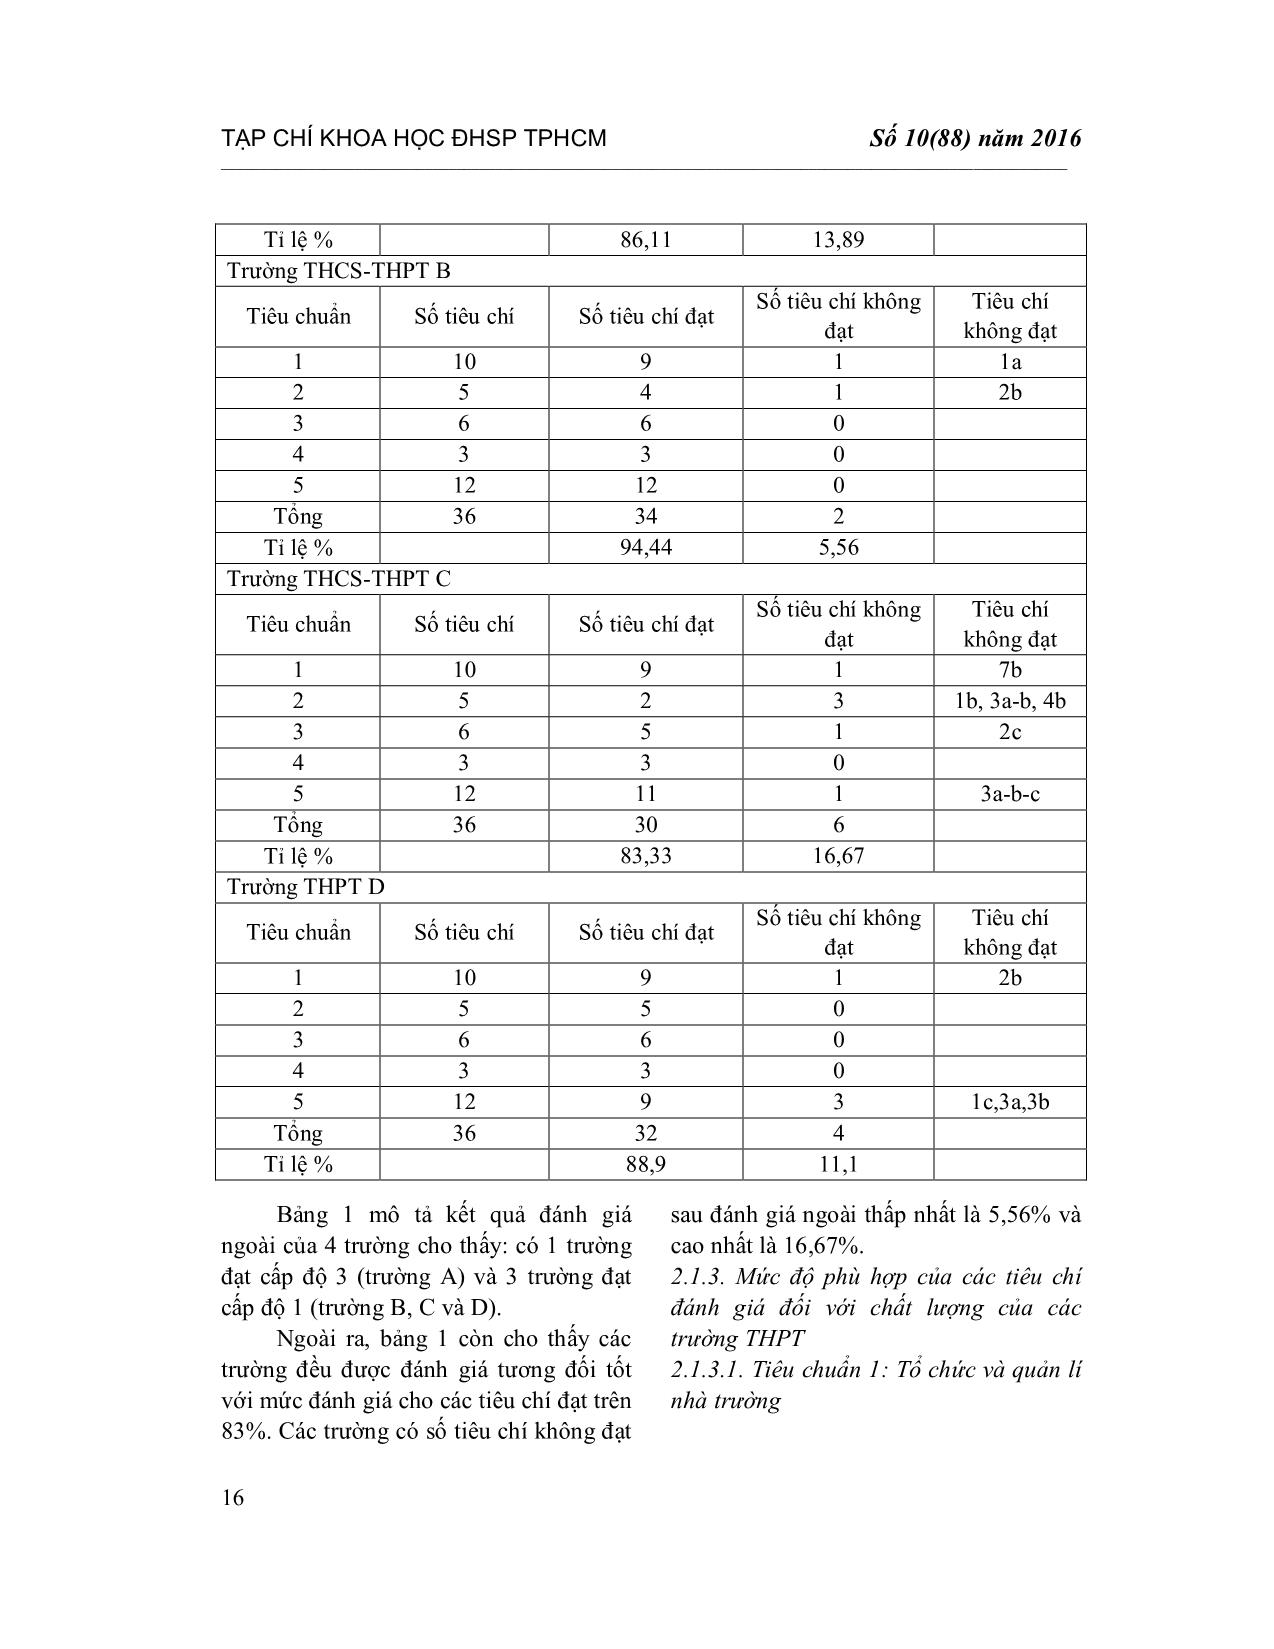 Phân tích mức độ phù hợp của các tiêu chuẩn kiểm định đối với các trường Trung học Phổ thông ở thành phố Hồ Chí Minh trang 3